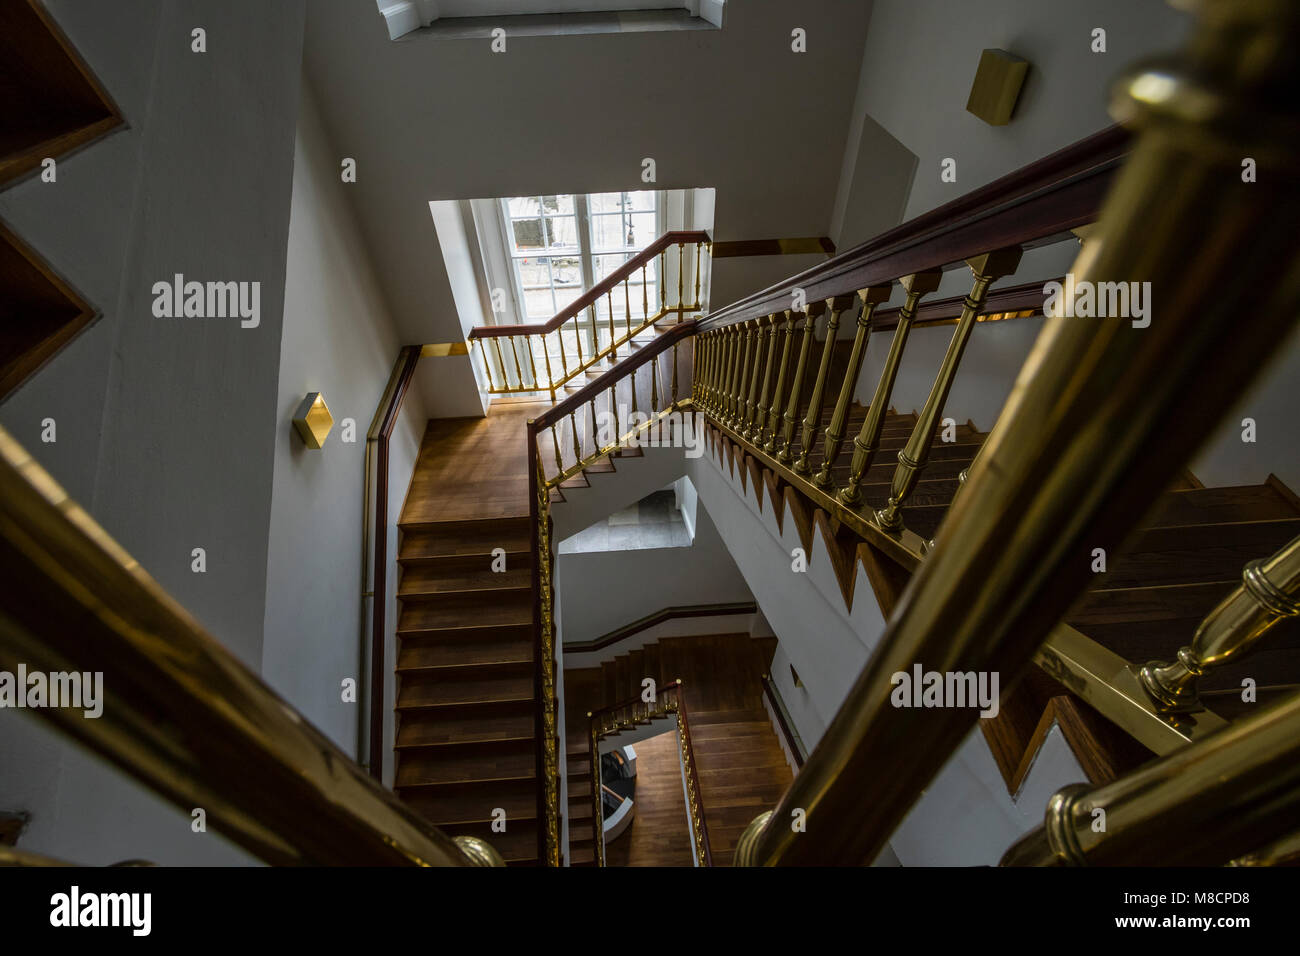 Escalier au Palais de Christiansborg Slotsholmen Banque D'Images